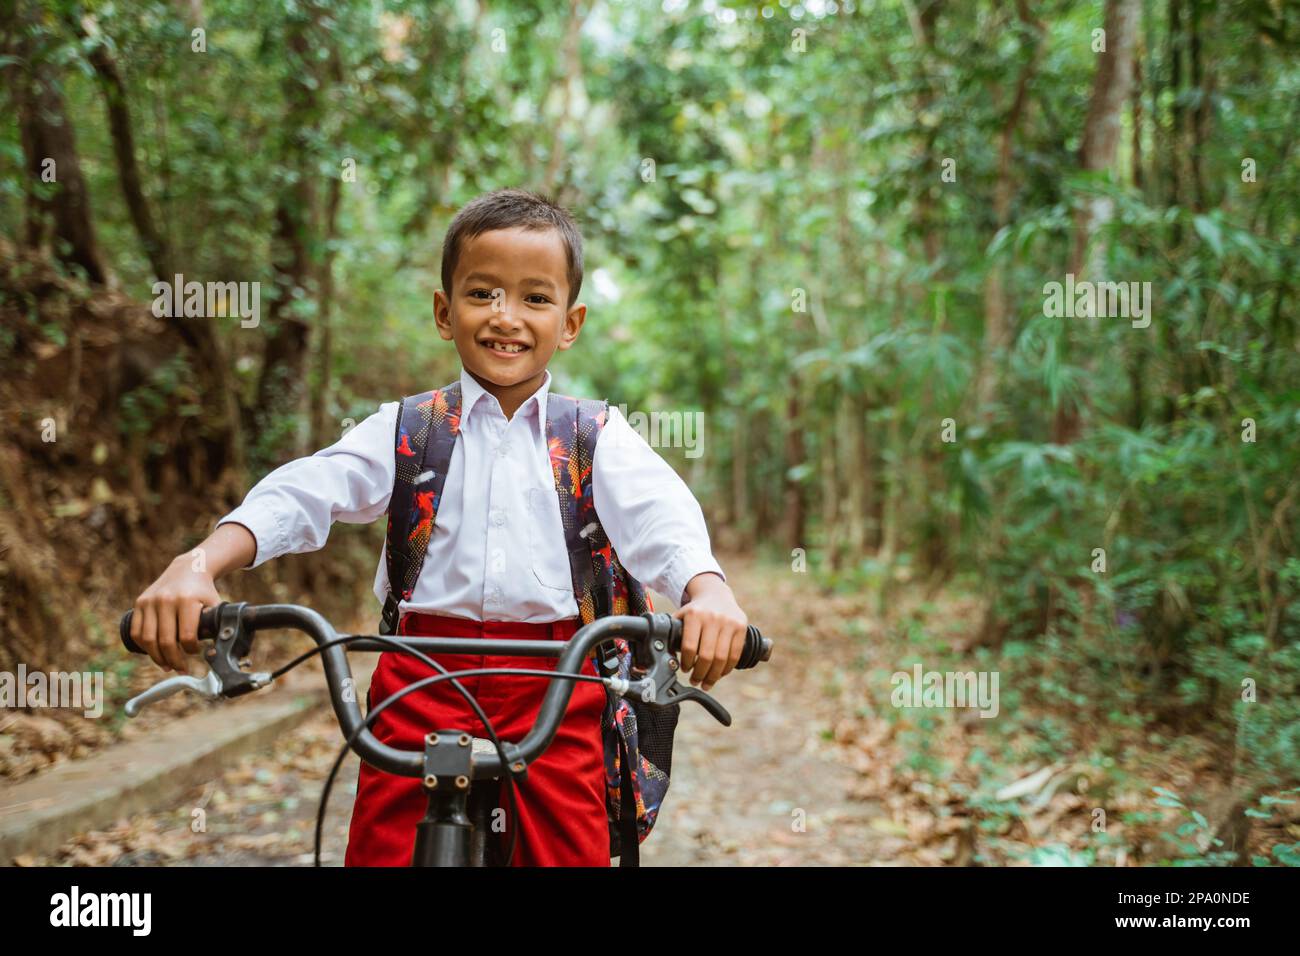 Ein männlicher Grundschüler, der Fahrrad fährt und lächelt Stockfoto